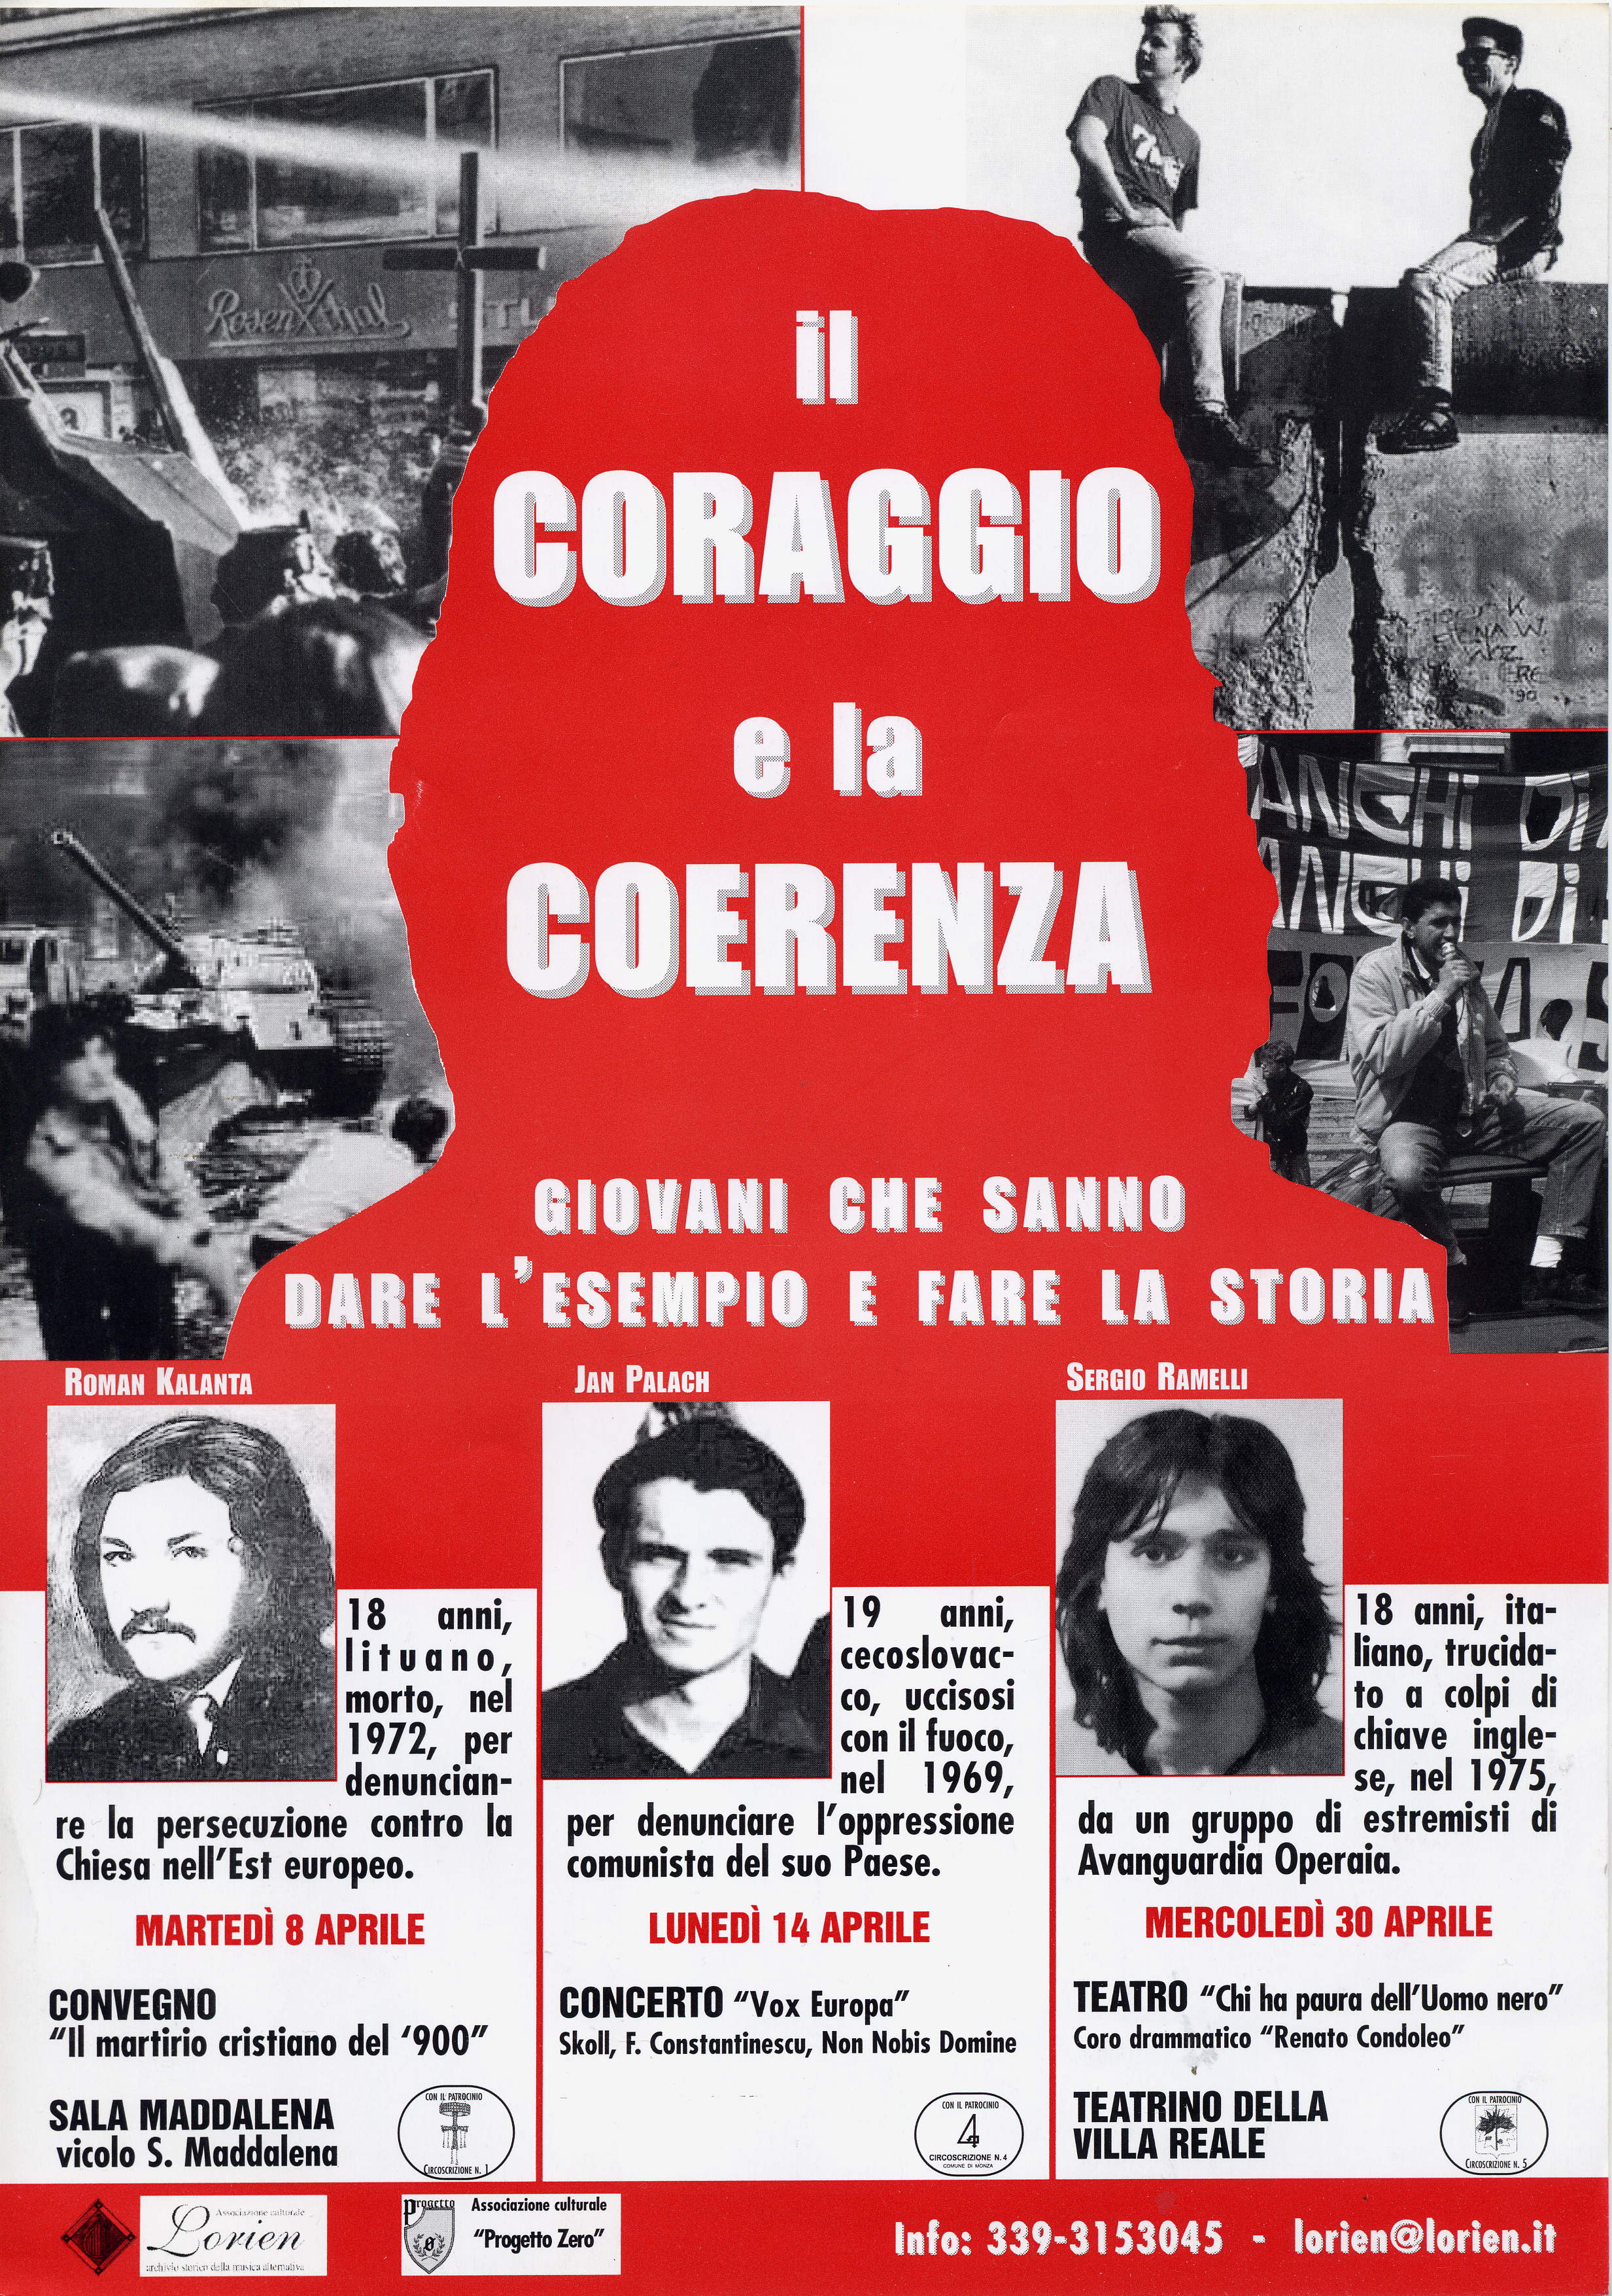 8 e 30 aprile 2003 Monza - Il Coraggio e la coerenza